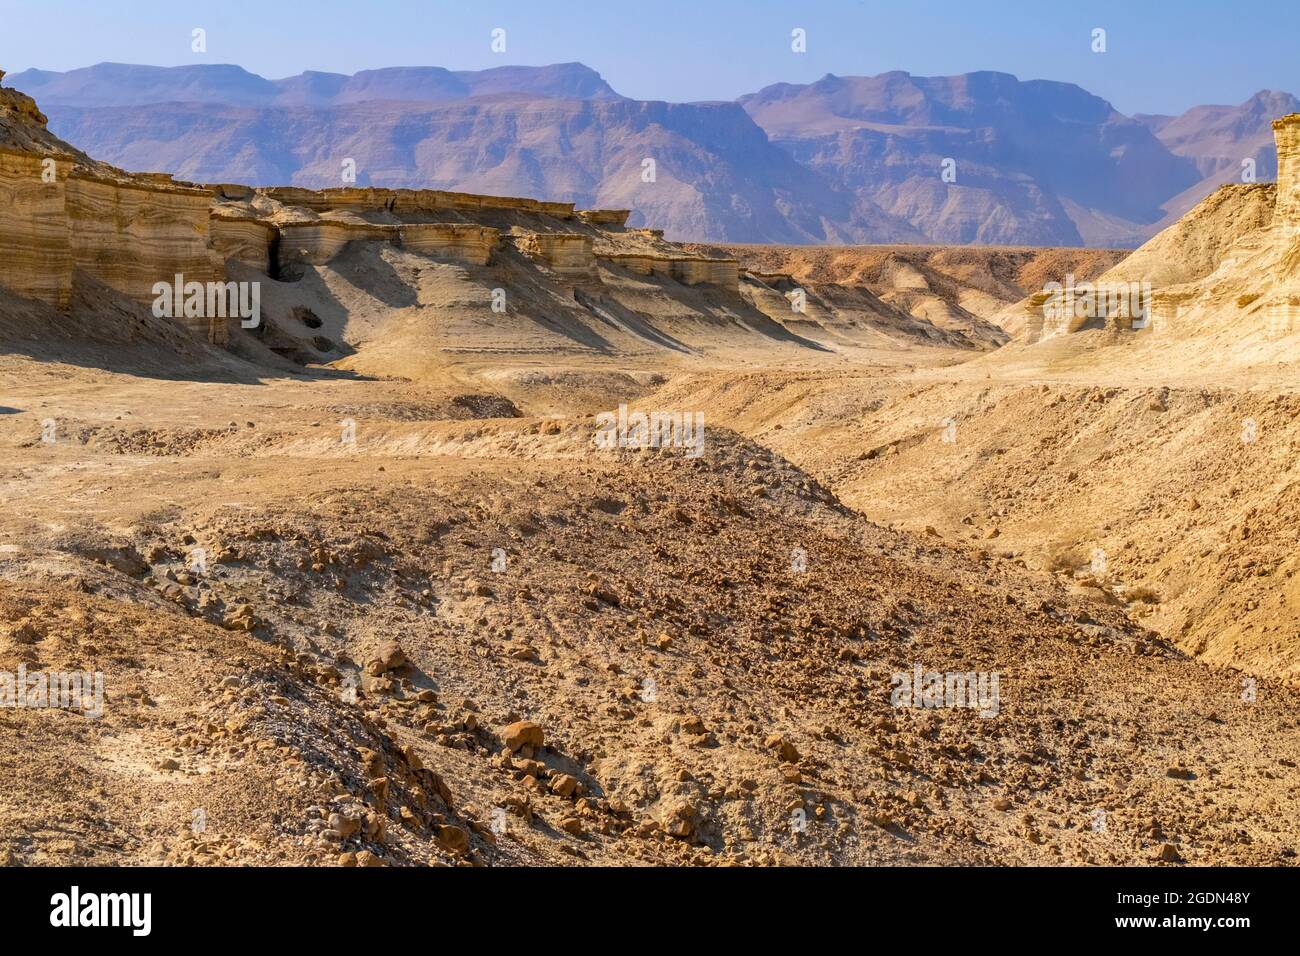 Marl Steinformationen. Erodiert Klippen aus Marl. Marl ist ein Calciumcarbonat - Reich, mudstone aus sedimentären Ablagerungen gebildet. In Israel fotografiert. Stockfoto